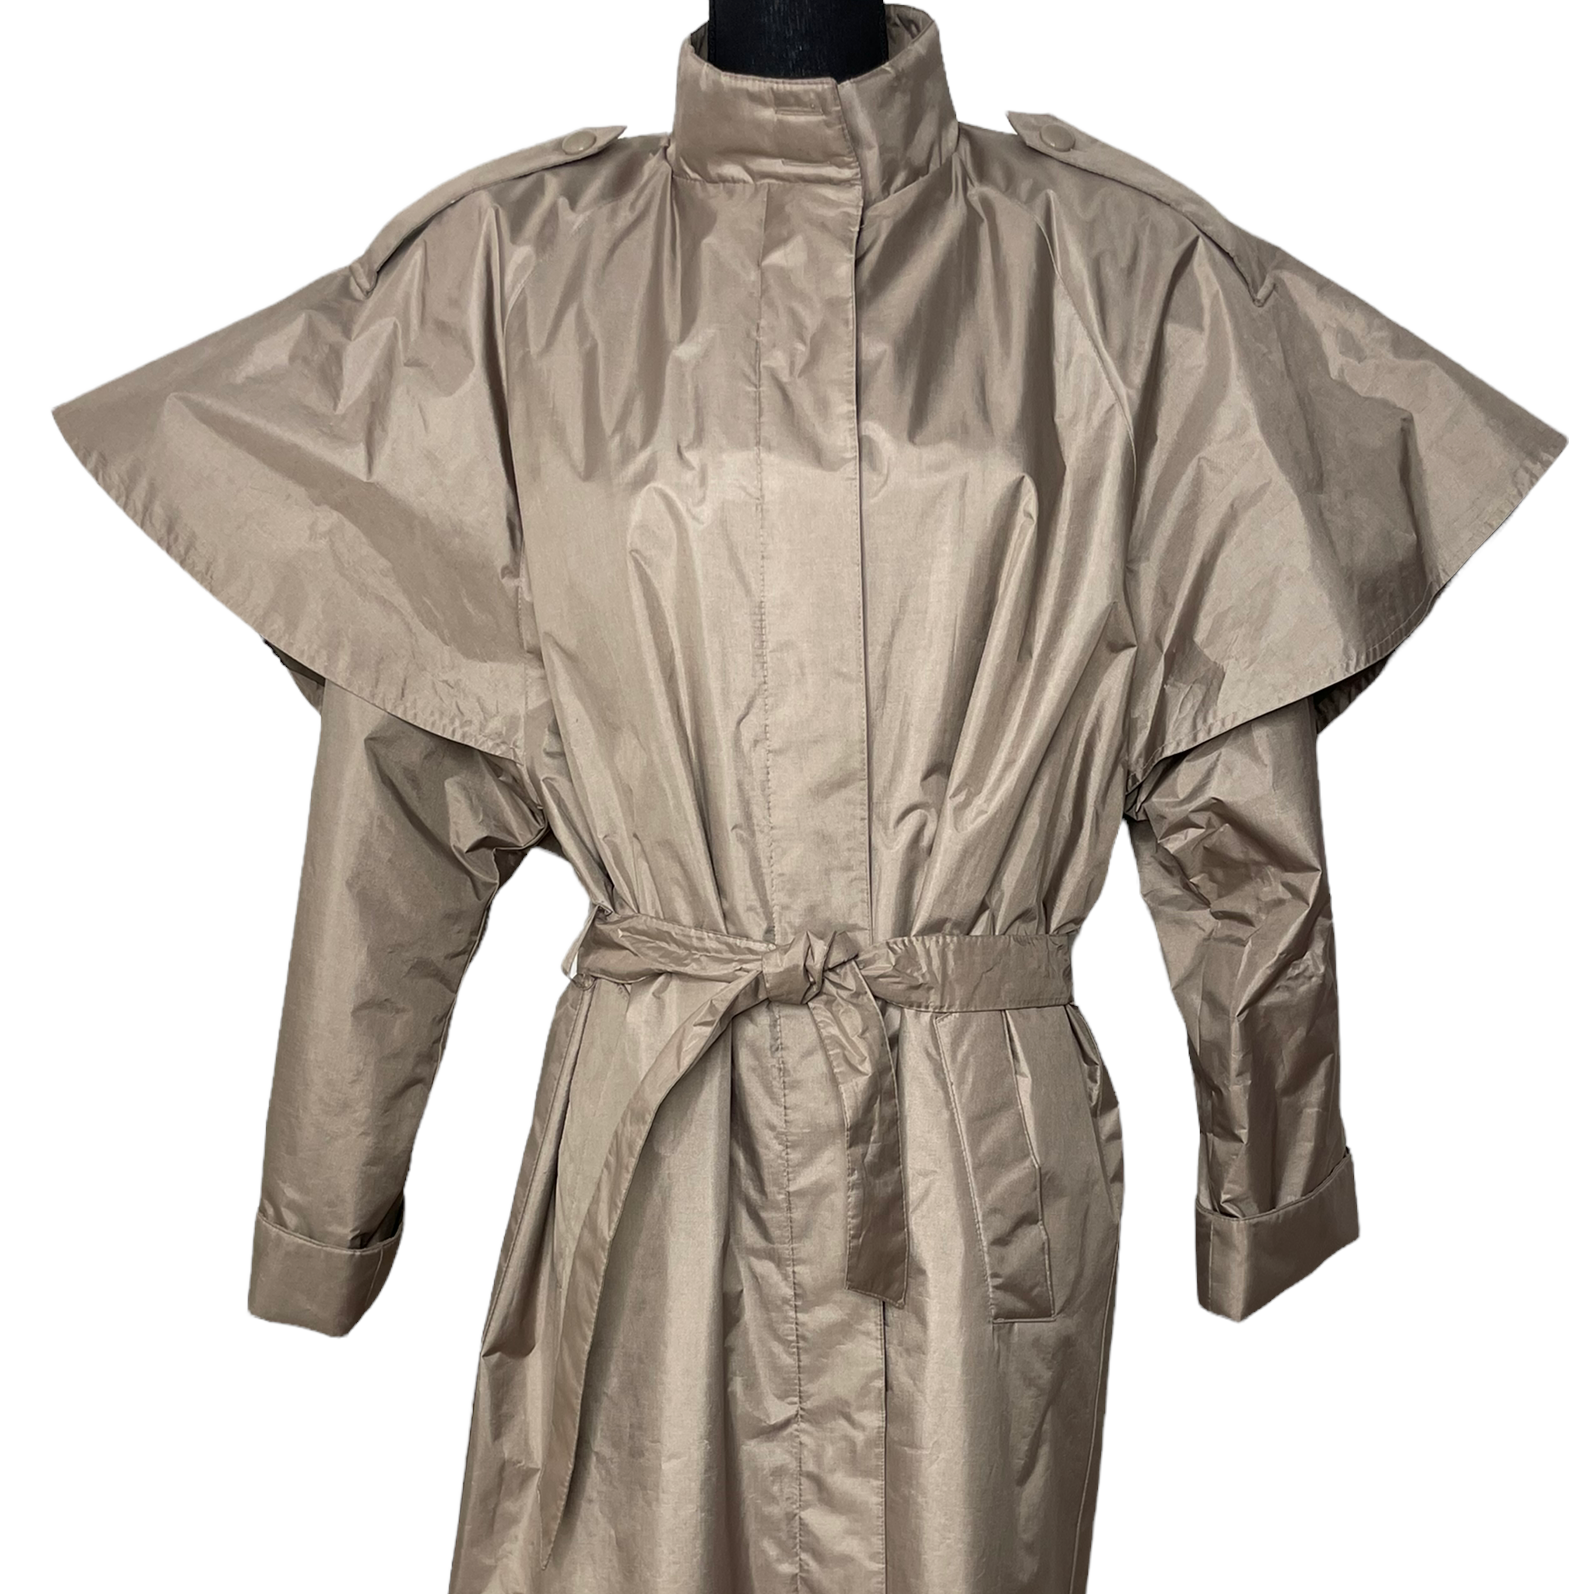 Vintage Fleet Street Trench Coat/Raincoat with Capelet – Keren's Closet